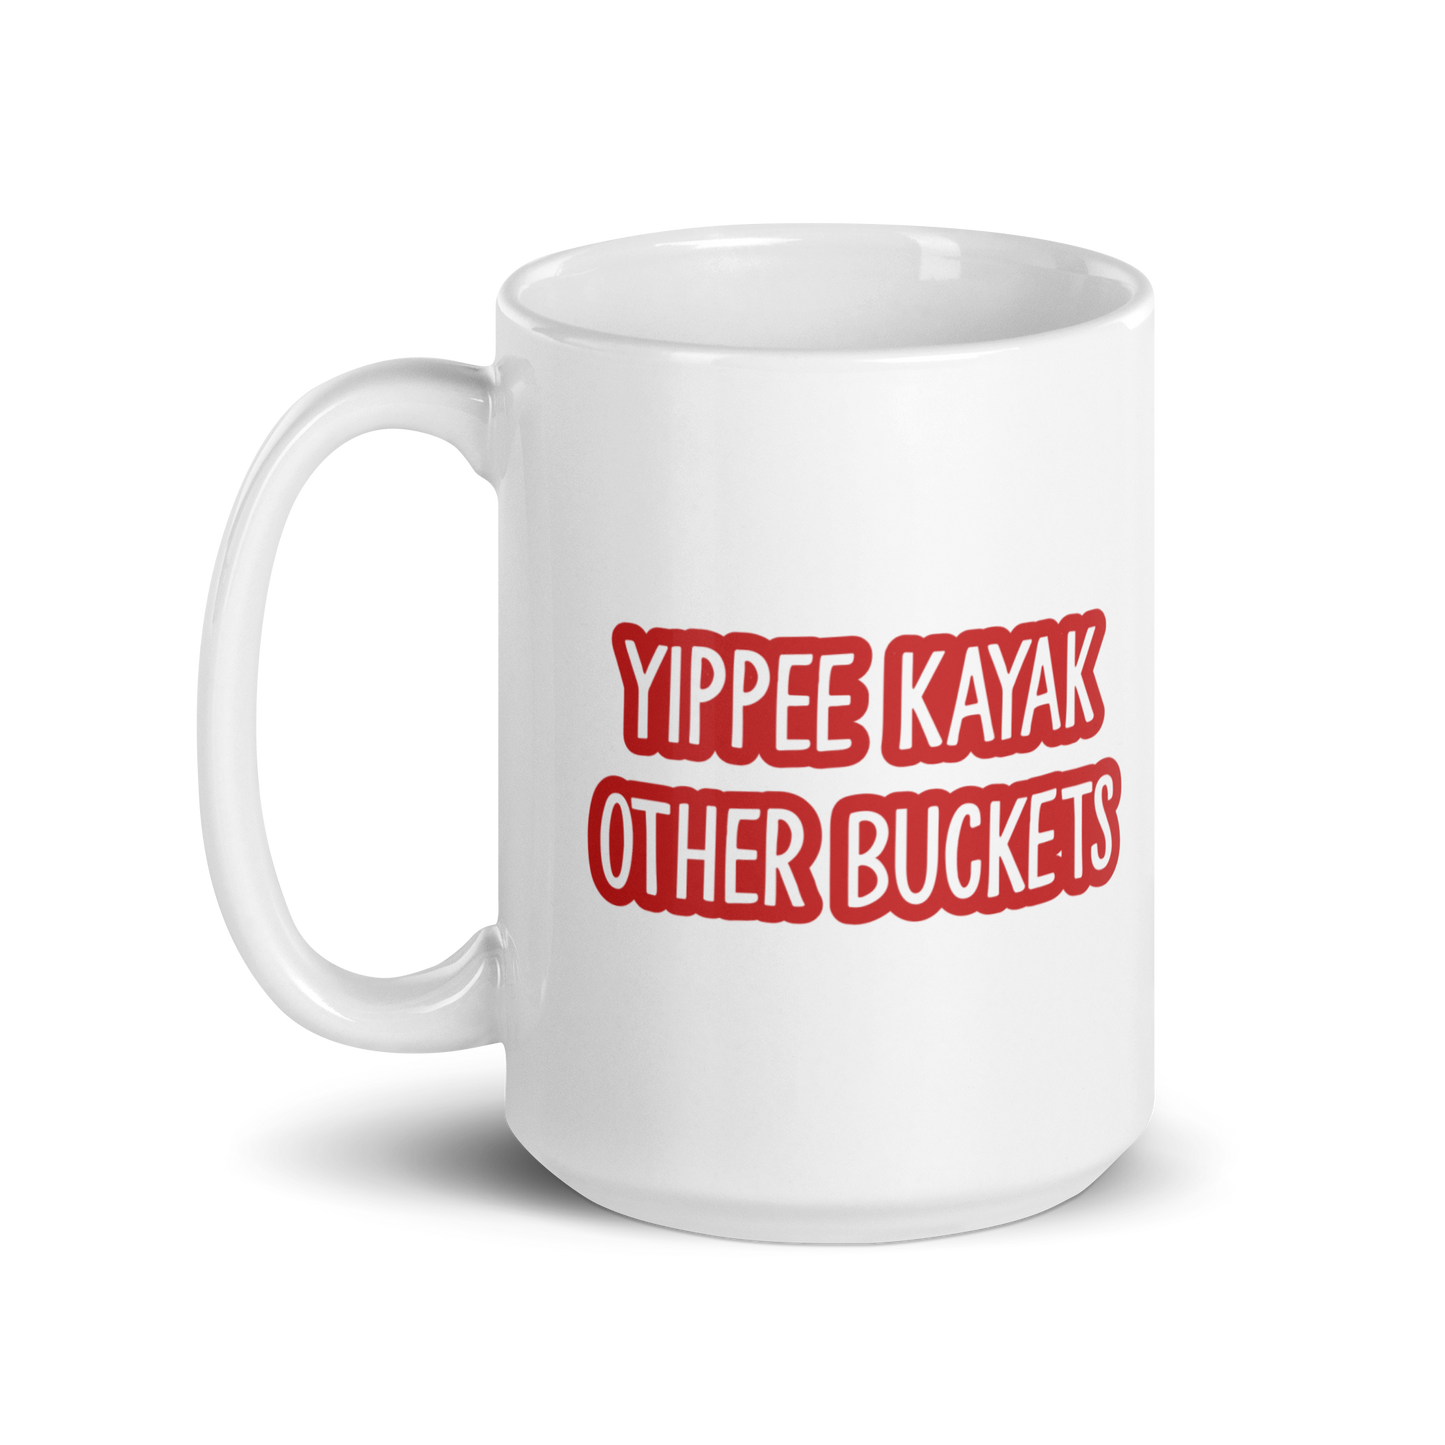 Yippee Kayaks Other Buckets White glossy mug